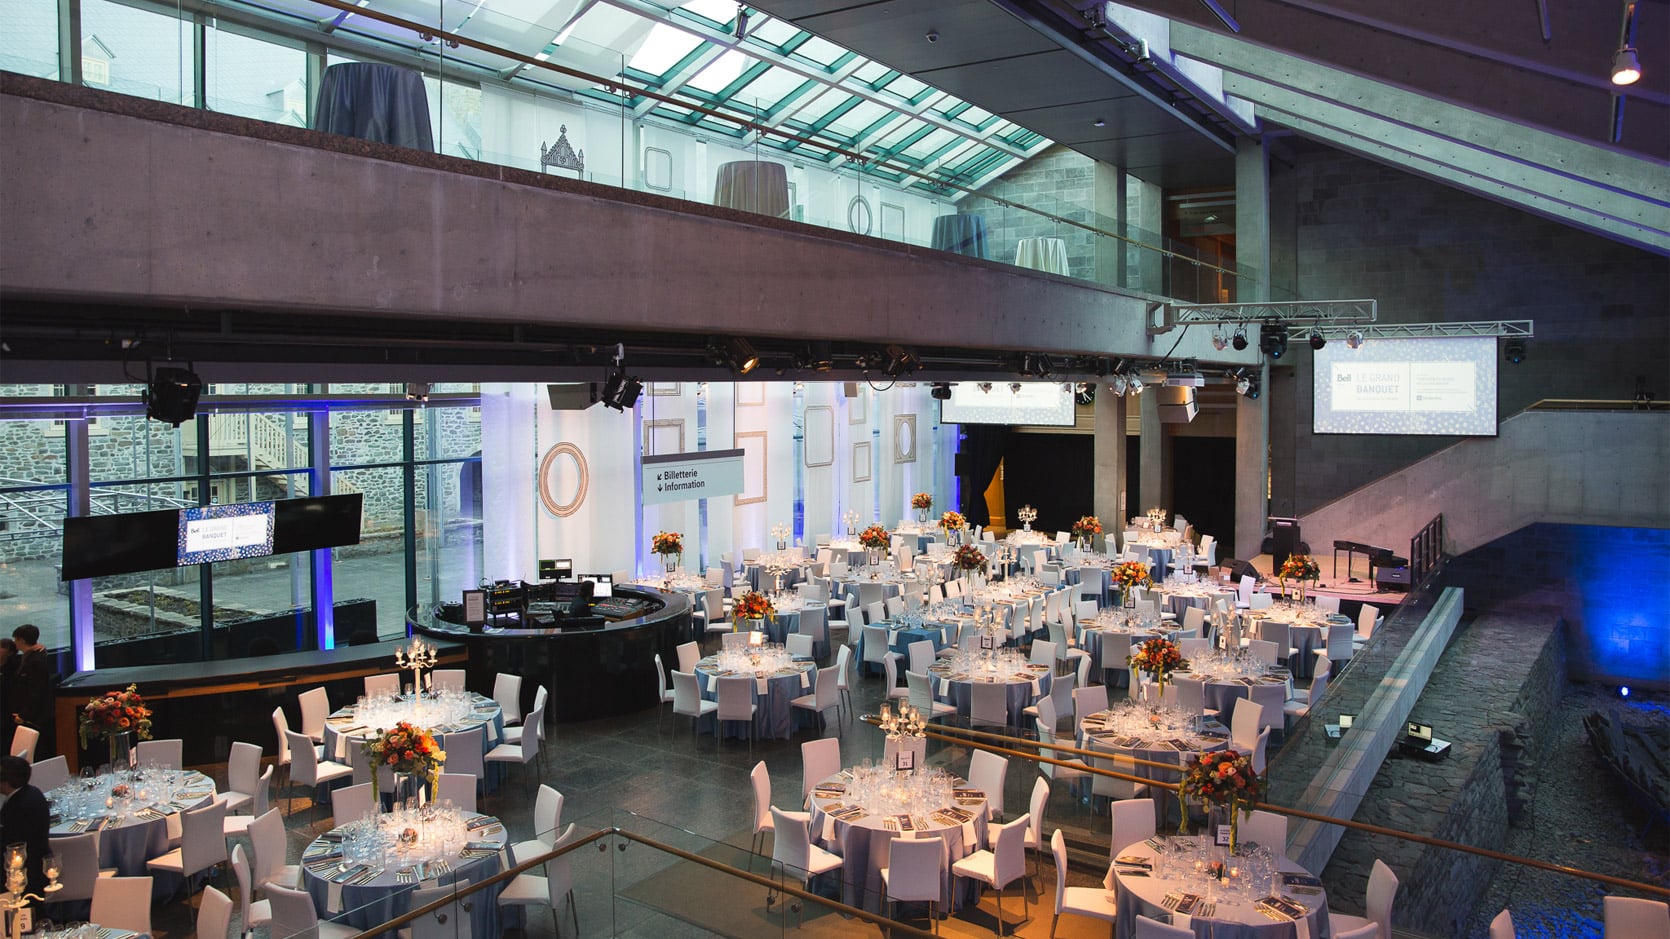 Le Hall du Musée en formule banquet, on y voit plusieurs tables rondes nappés en gris avec des chaises blanches et des arrangements floraux et des chandeliers.